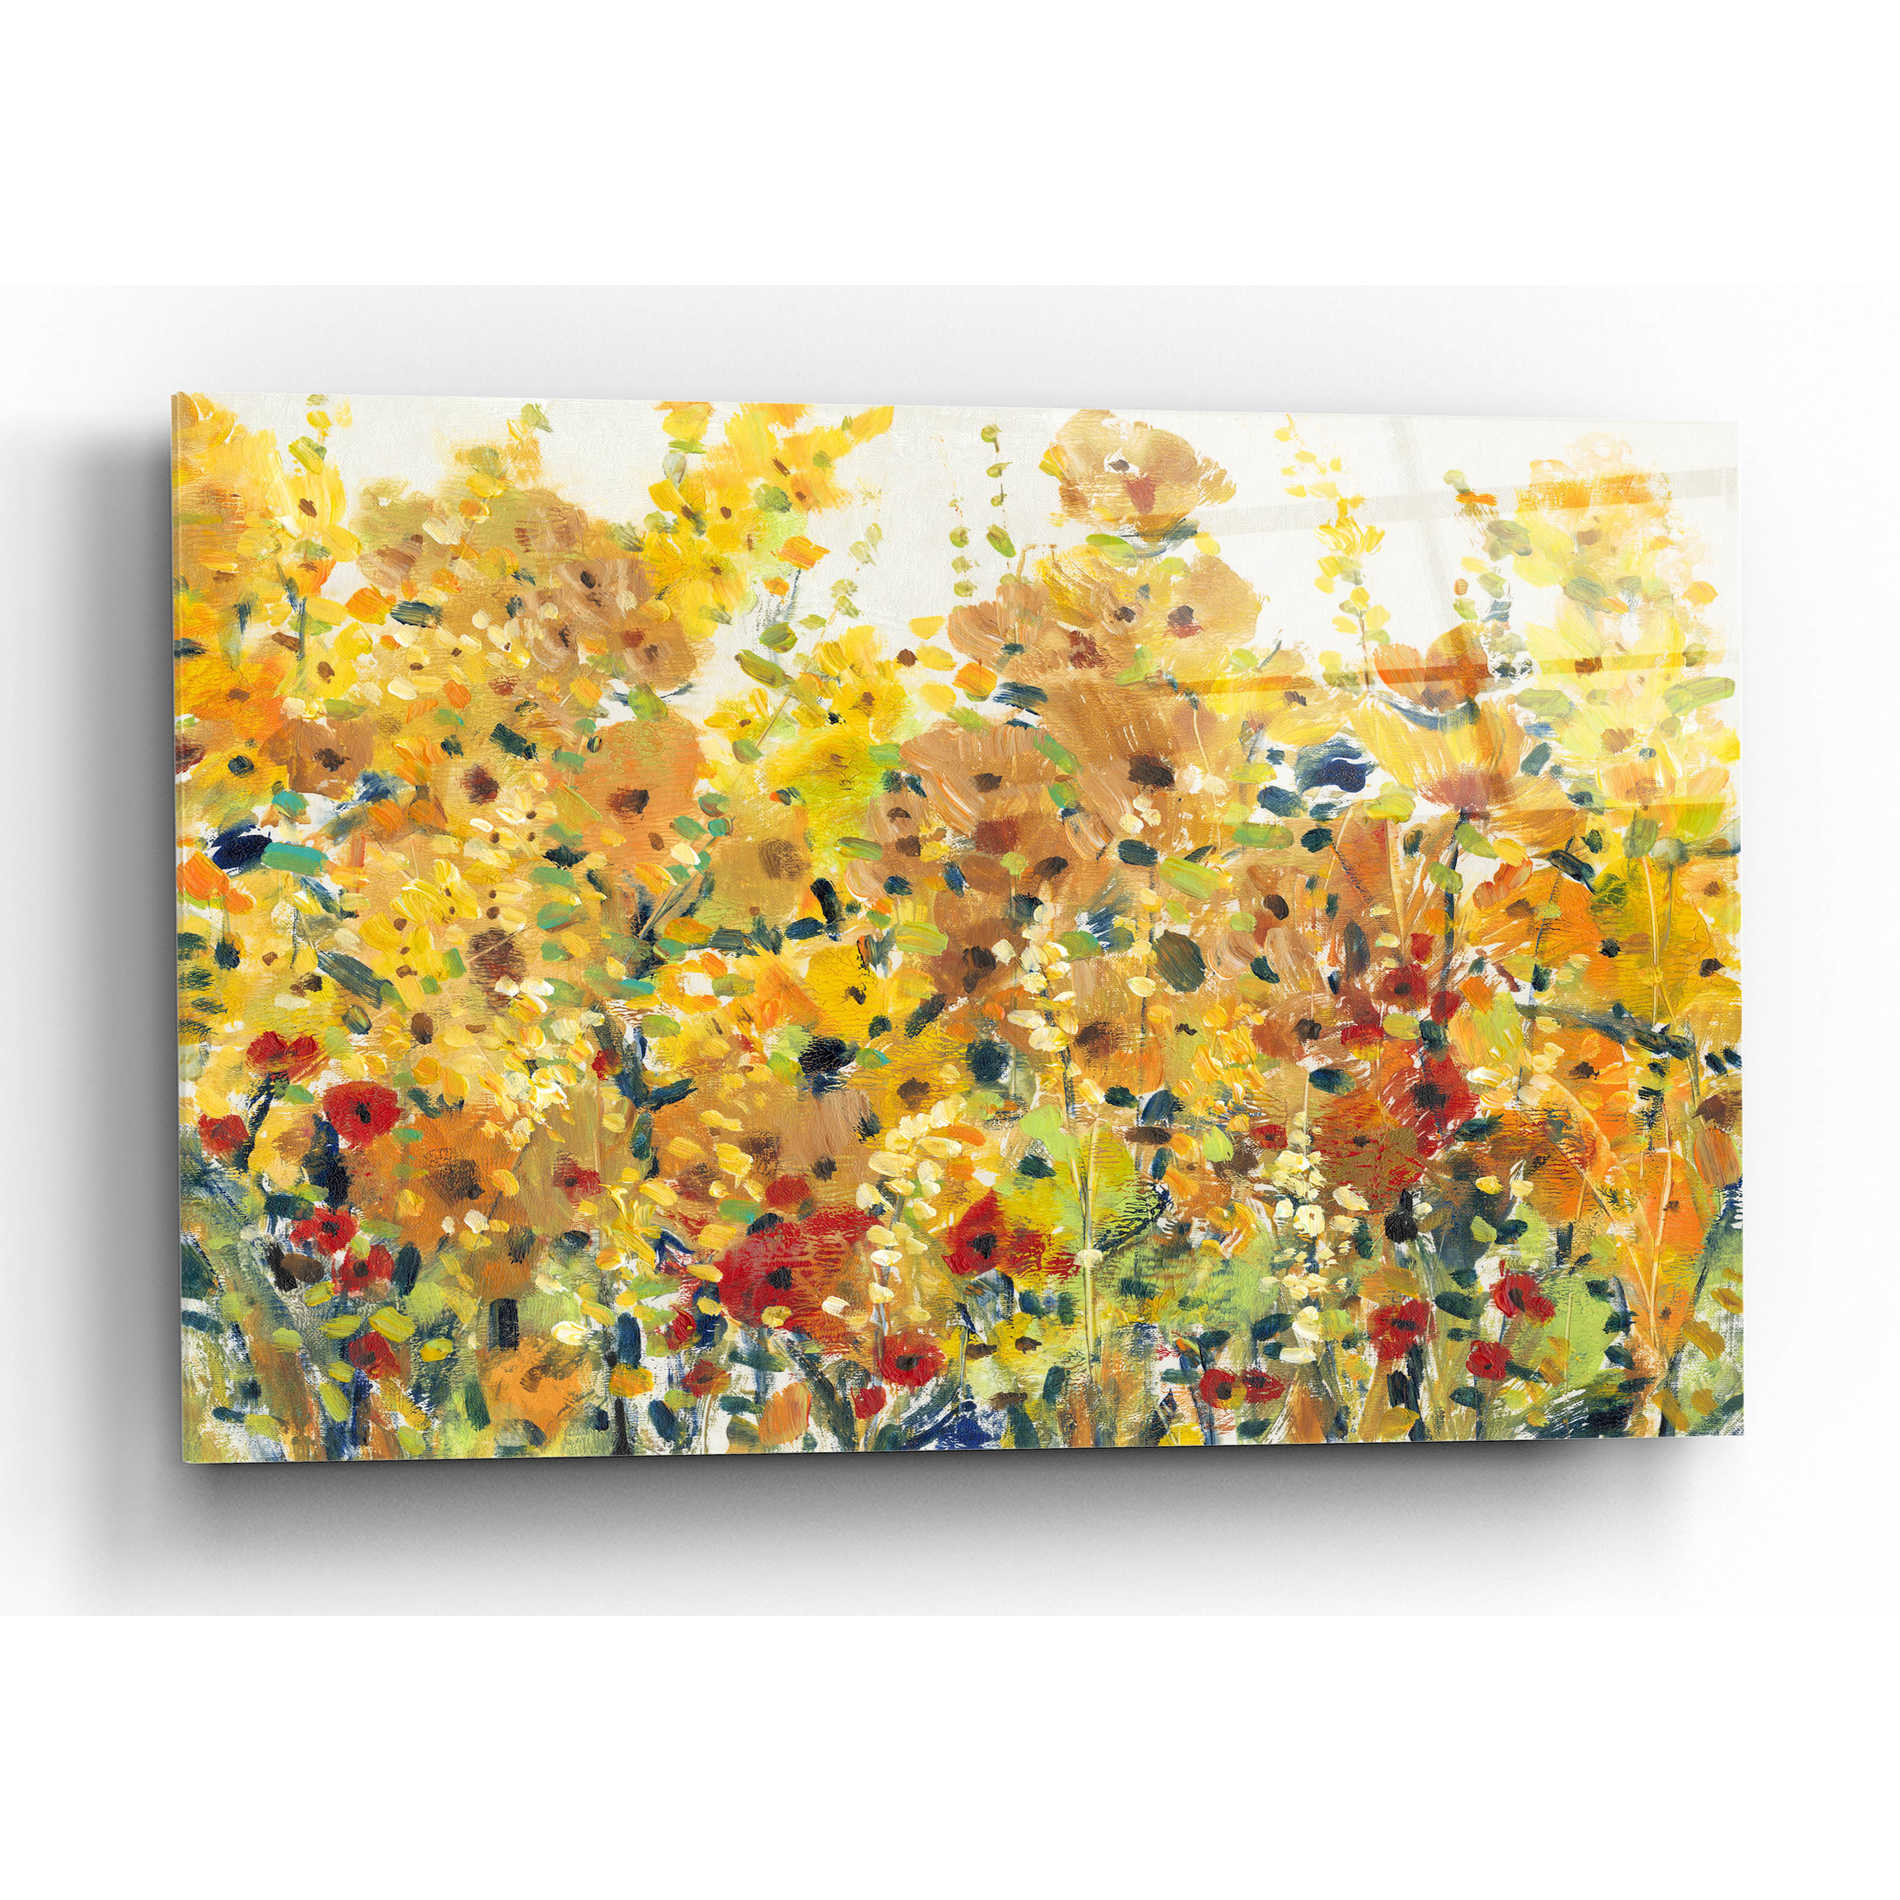 Epic Art 'Golden Summer Garden I' by Tim O'Toole, Acrylic Glass Wall Art,24x16